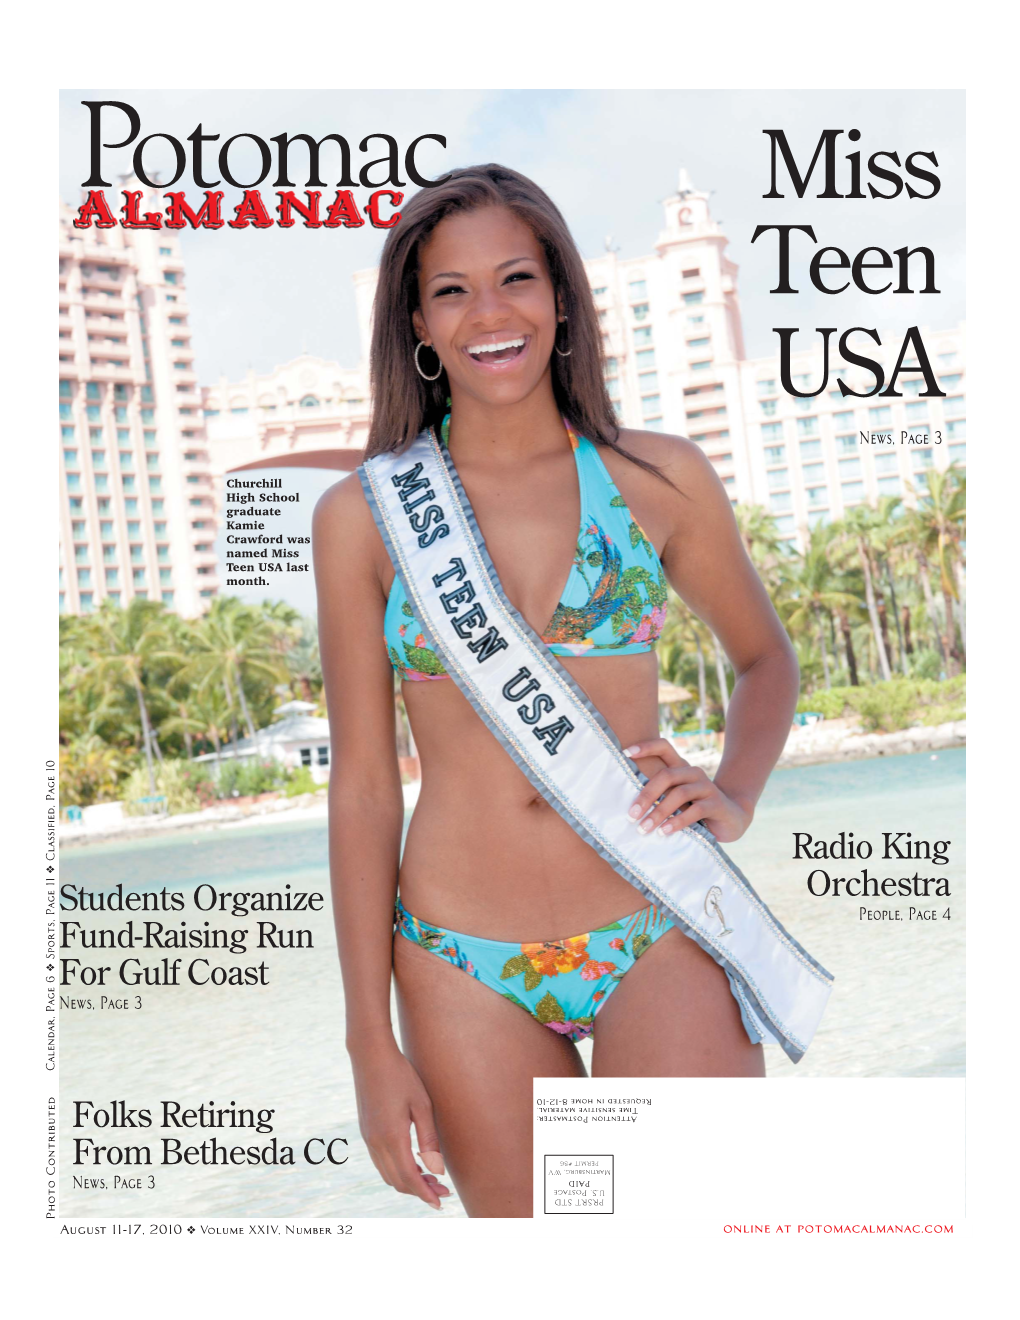 Potomac Miss Teen USA News, Page 3